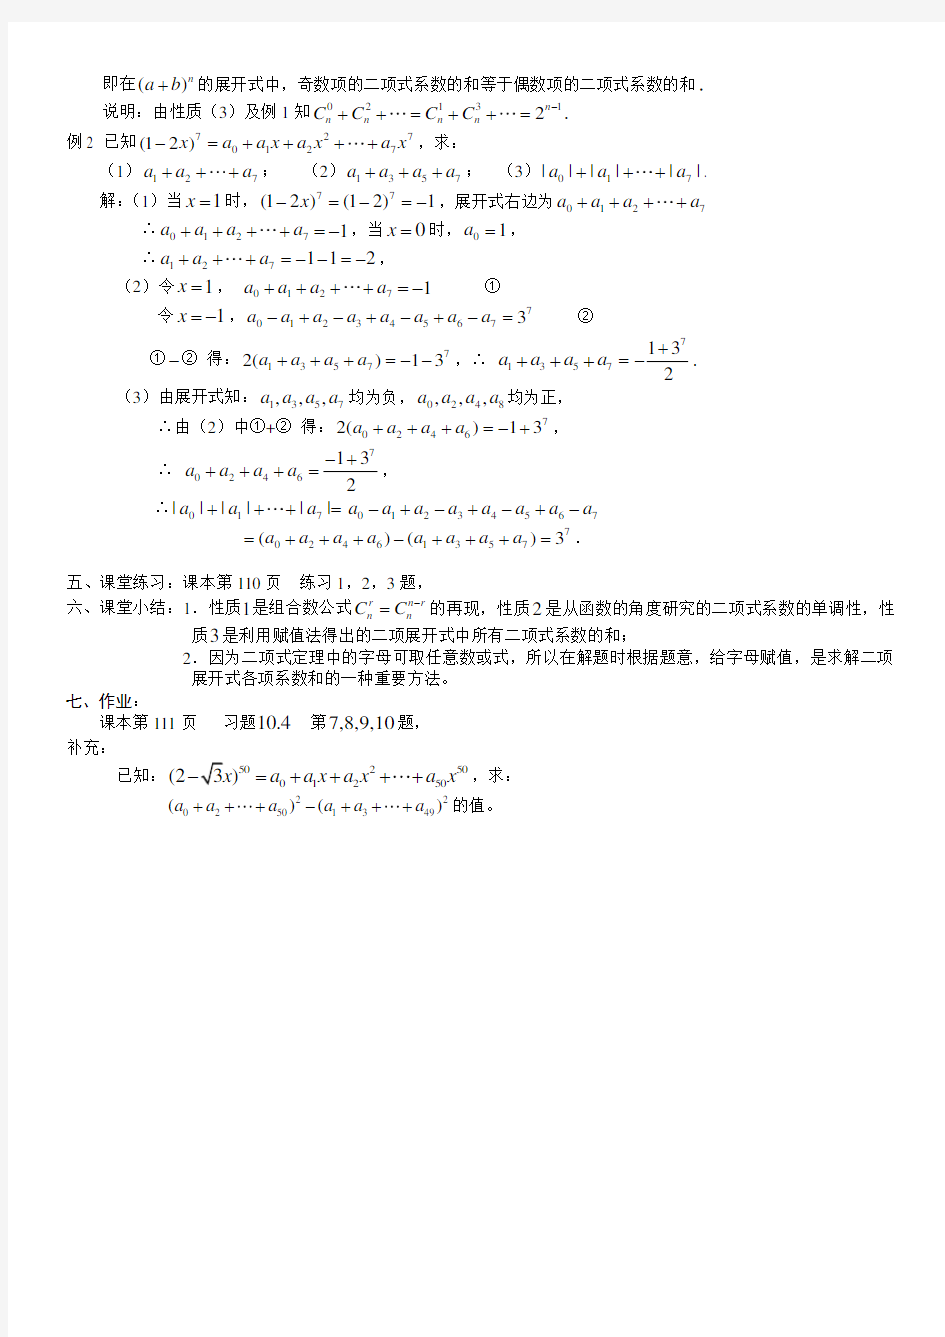 杨辉三角在二项式中的应用